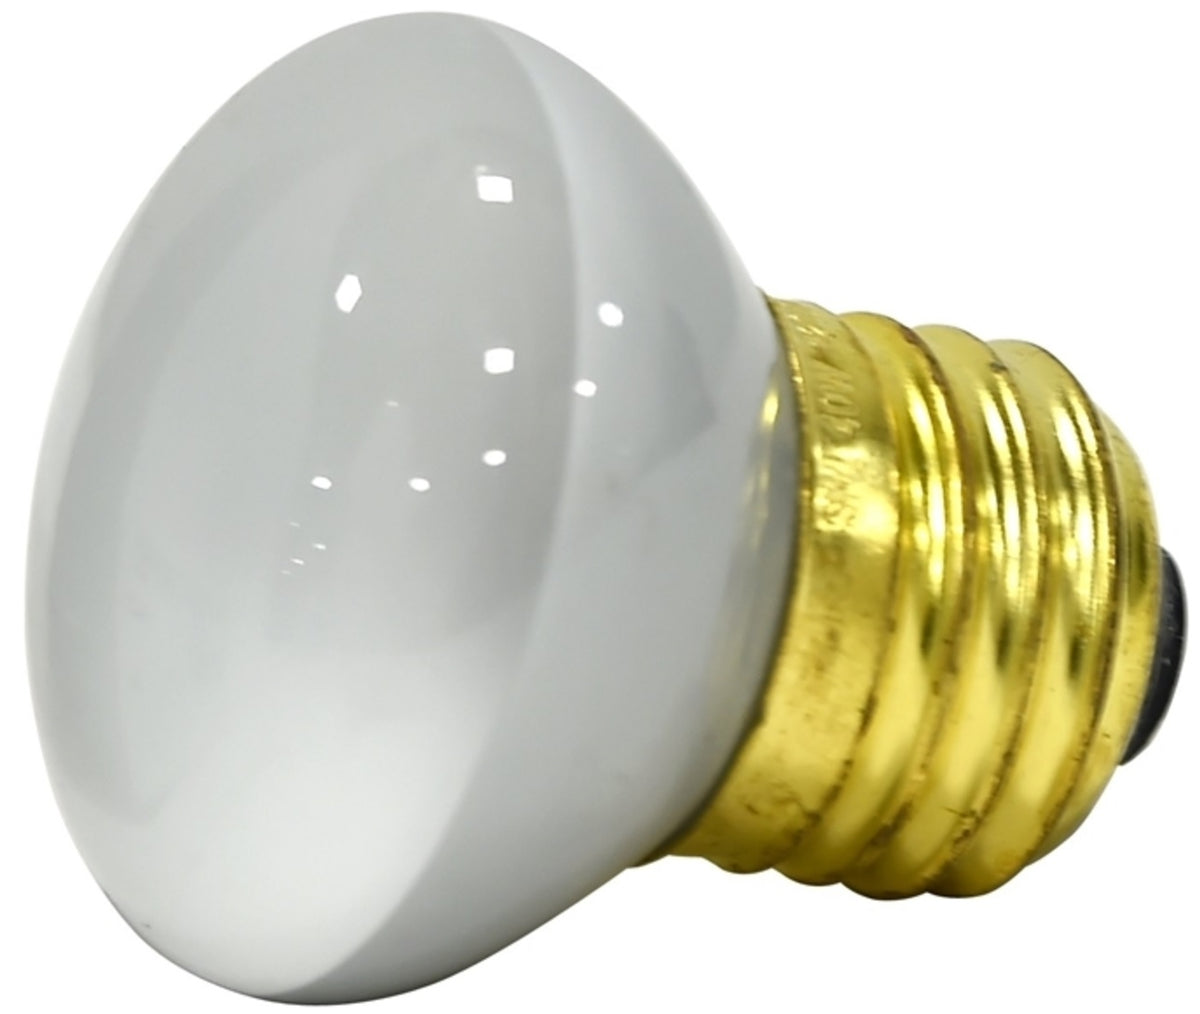 Sylvania 14819 Incandescent R14 Reflector Light Bulb, 40 Watts, 120 Volts